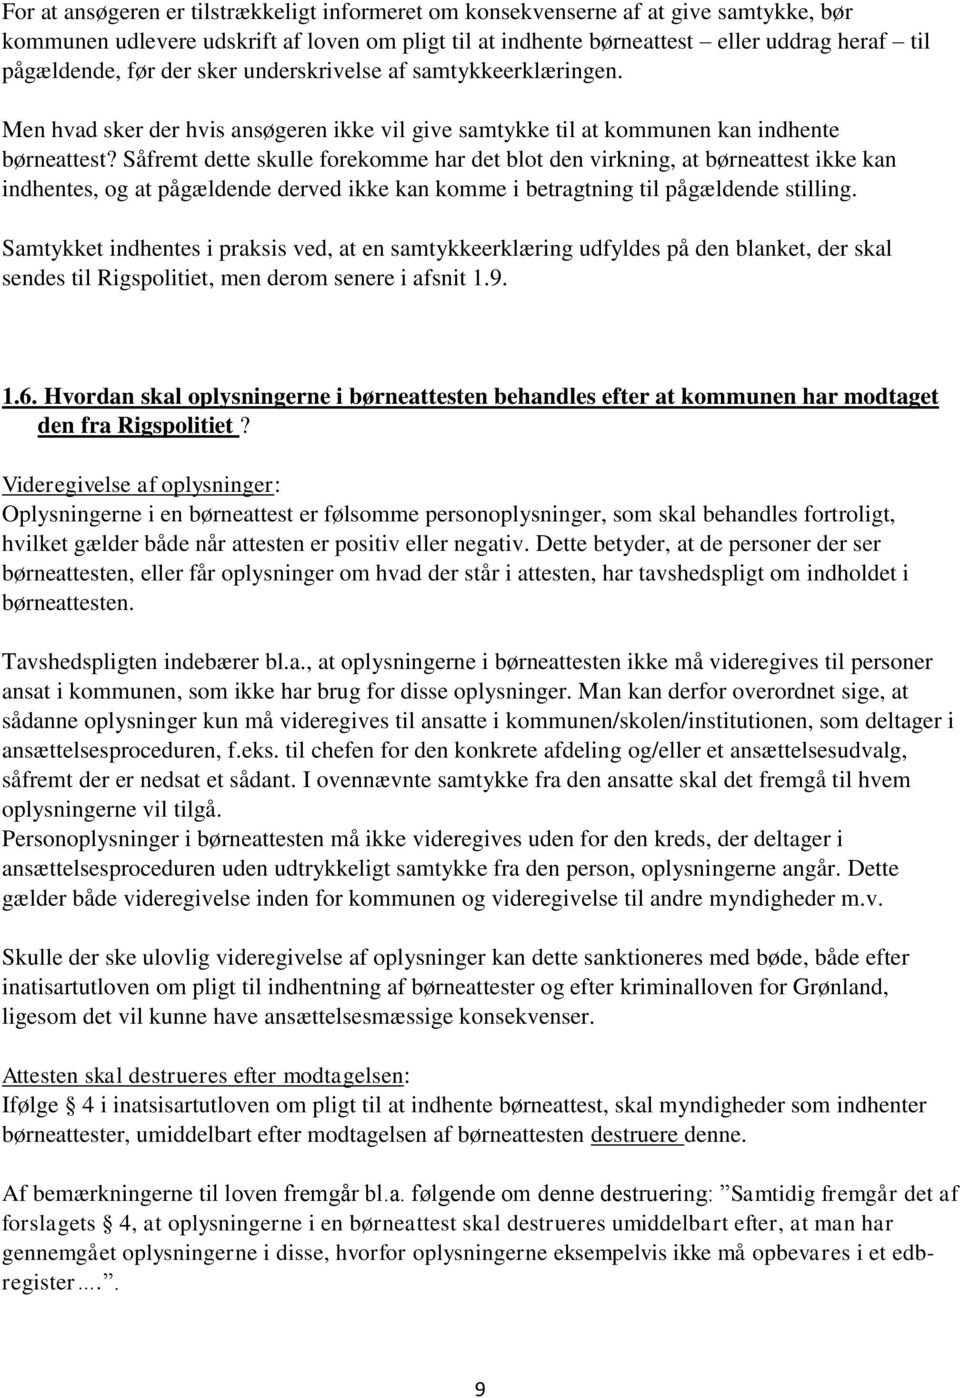 NOTAT OM BØRNEATTESTER OG STRAFFEATTESTER - PDF Free Download